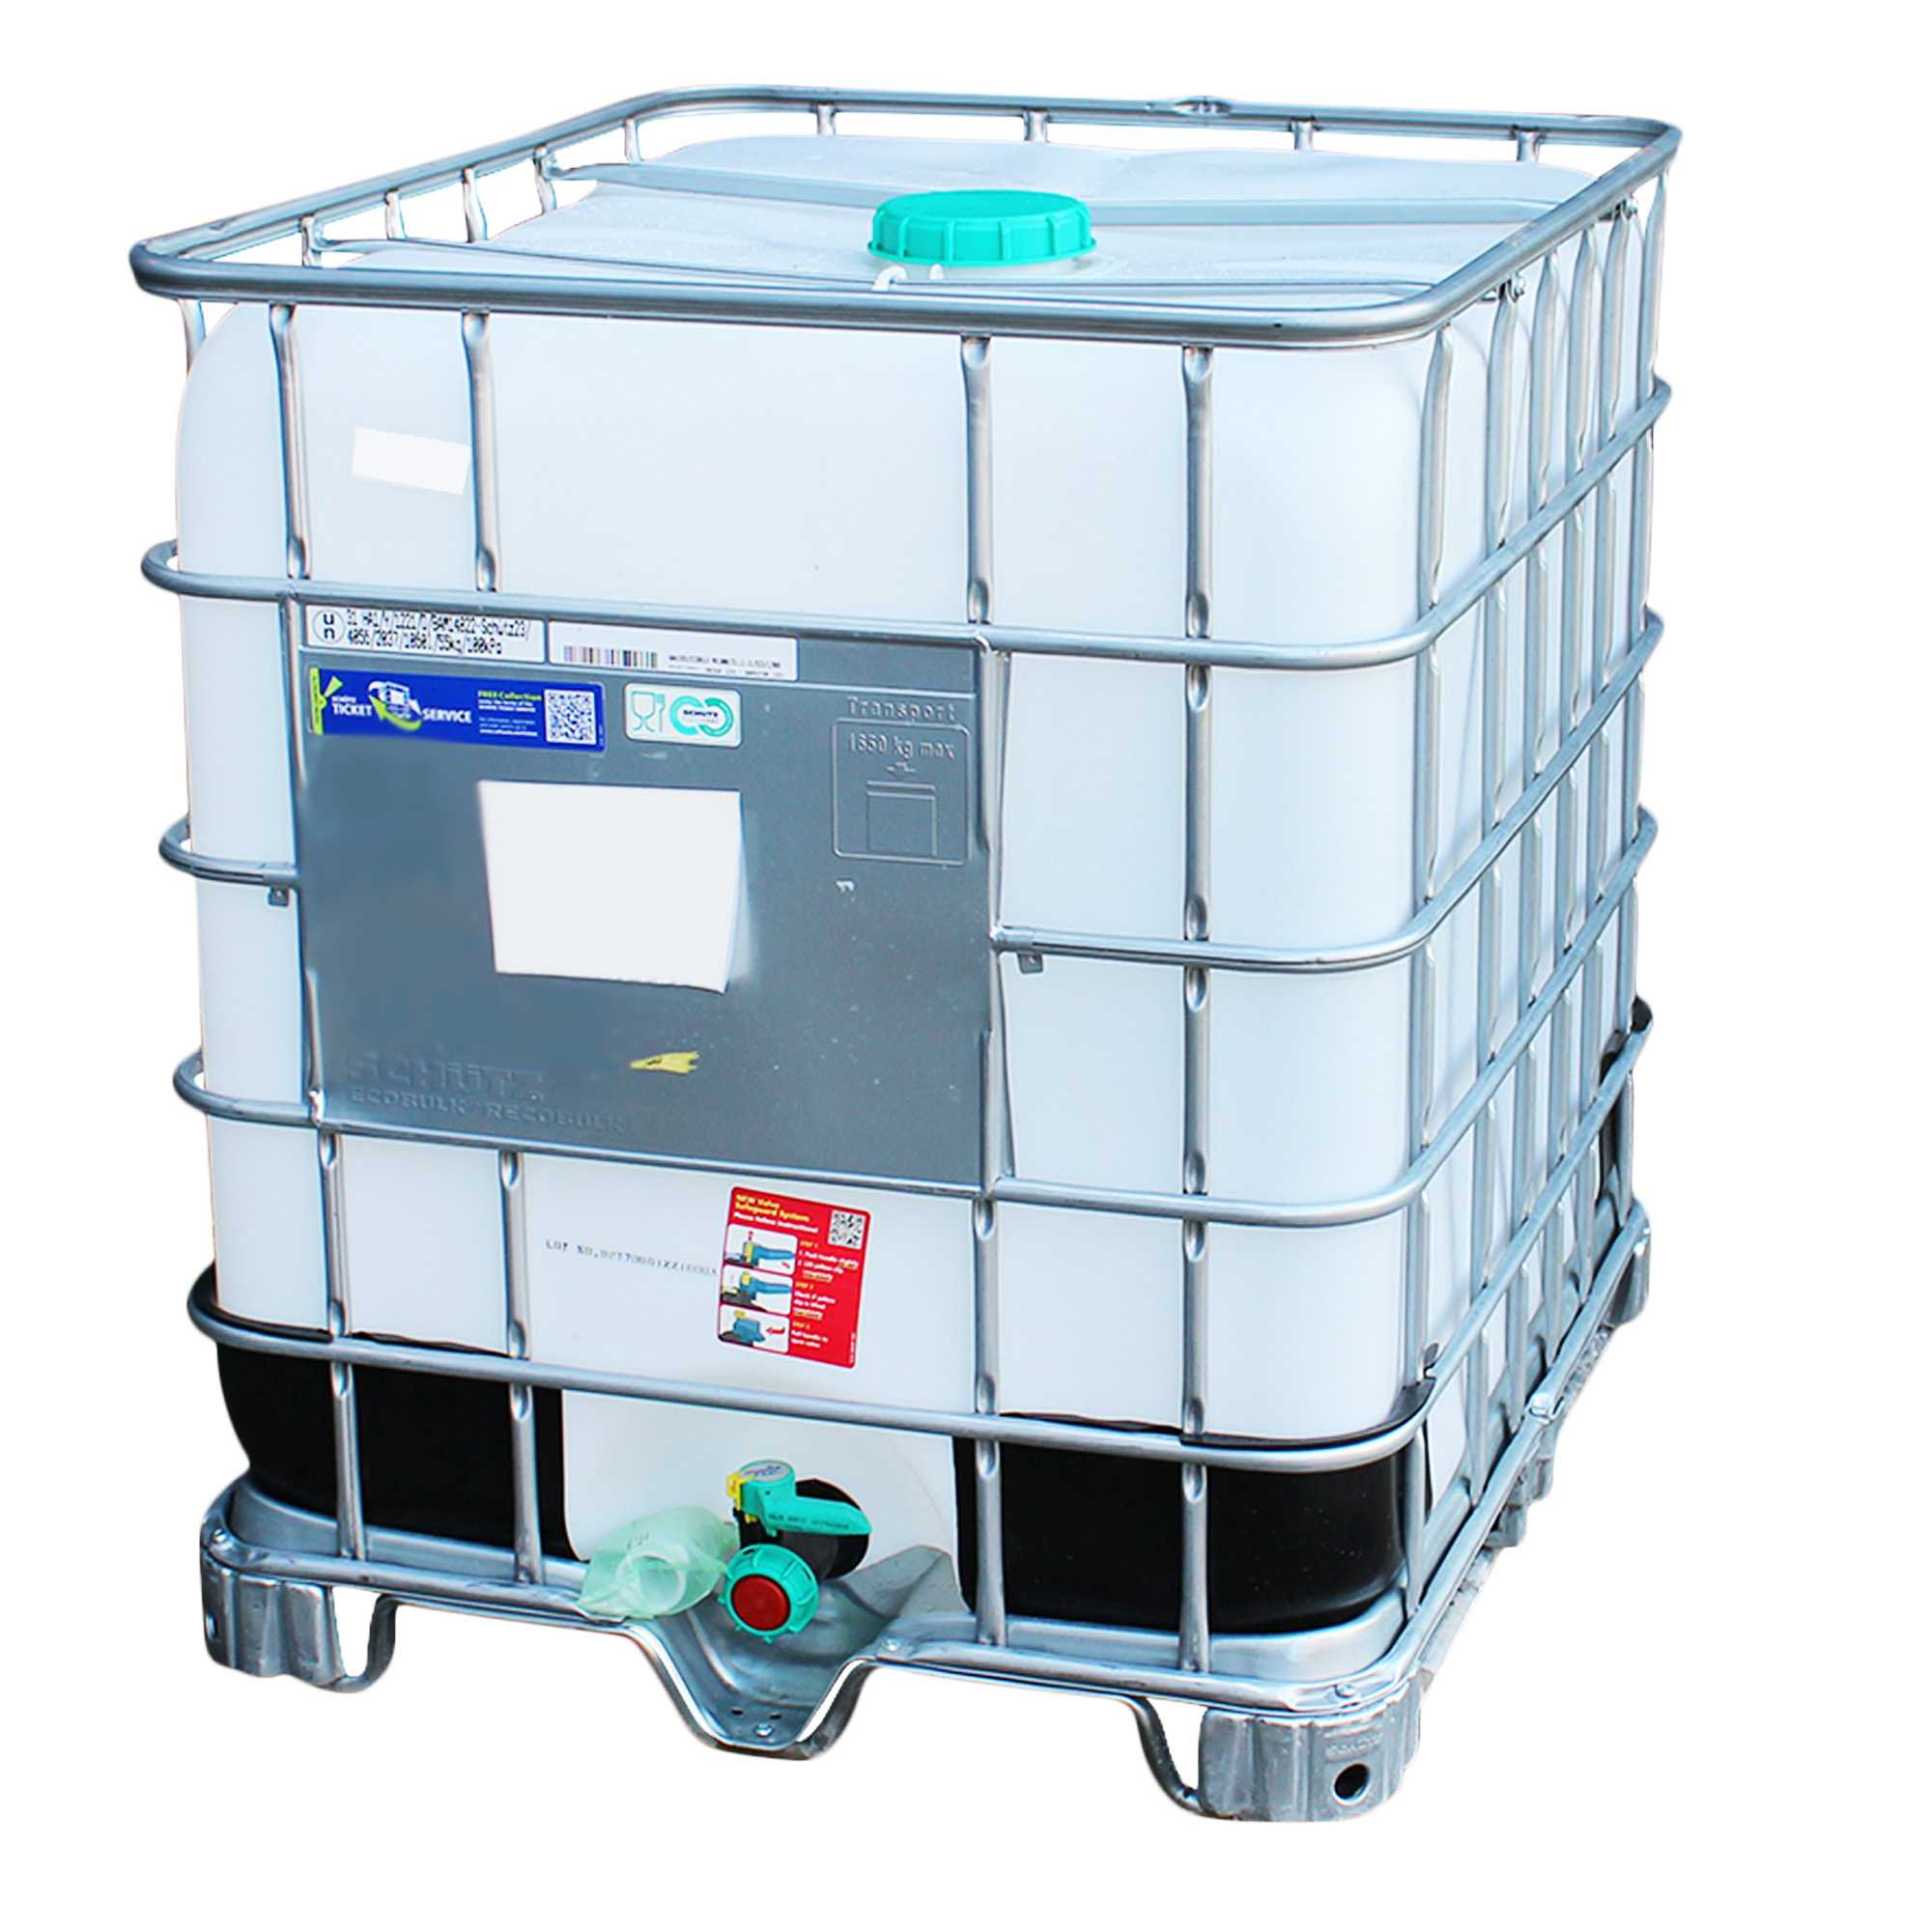 IBC Container 1000l auf Metallpalette -  gebraucht, ungespült, lebensm. Öl